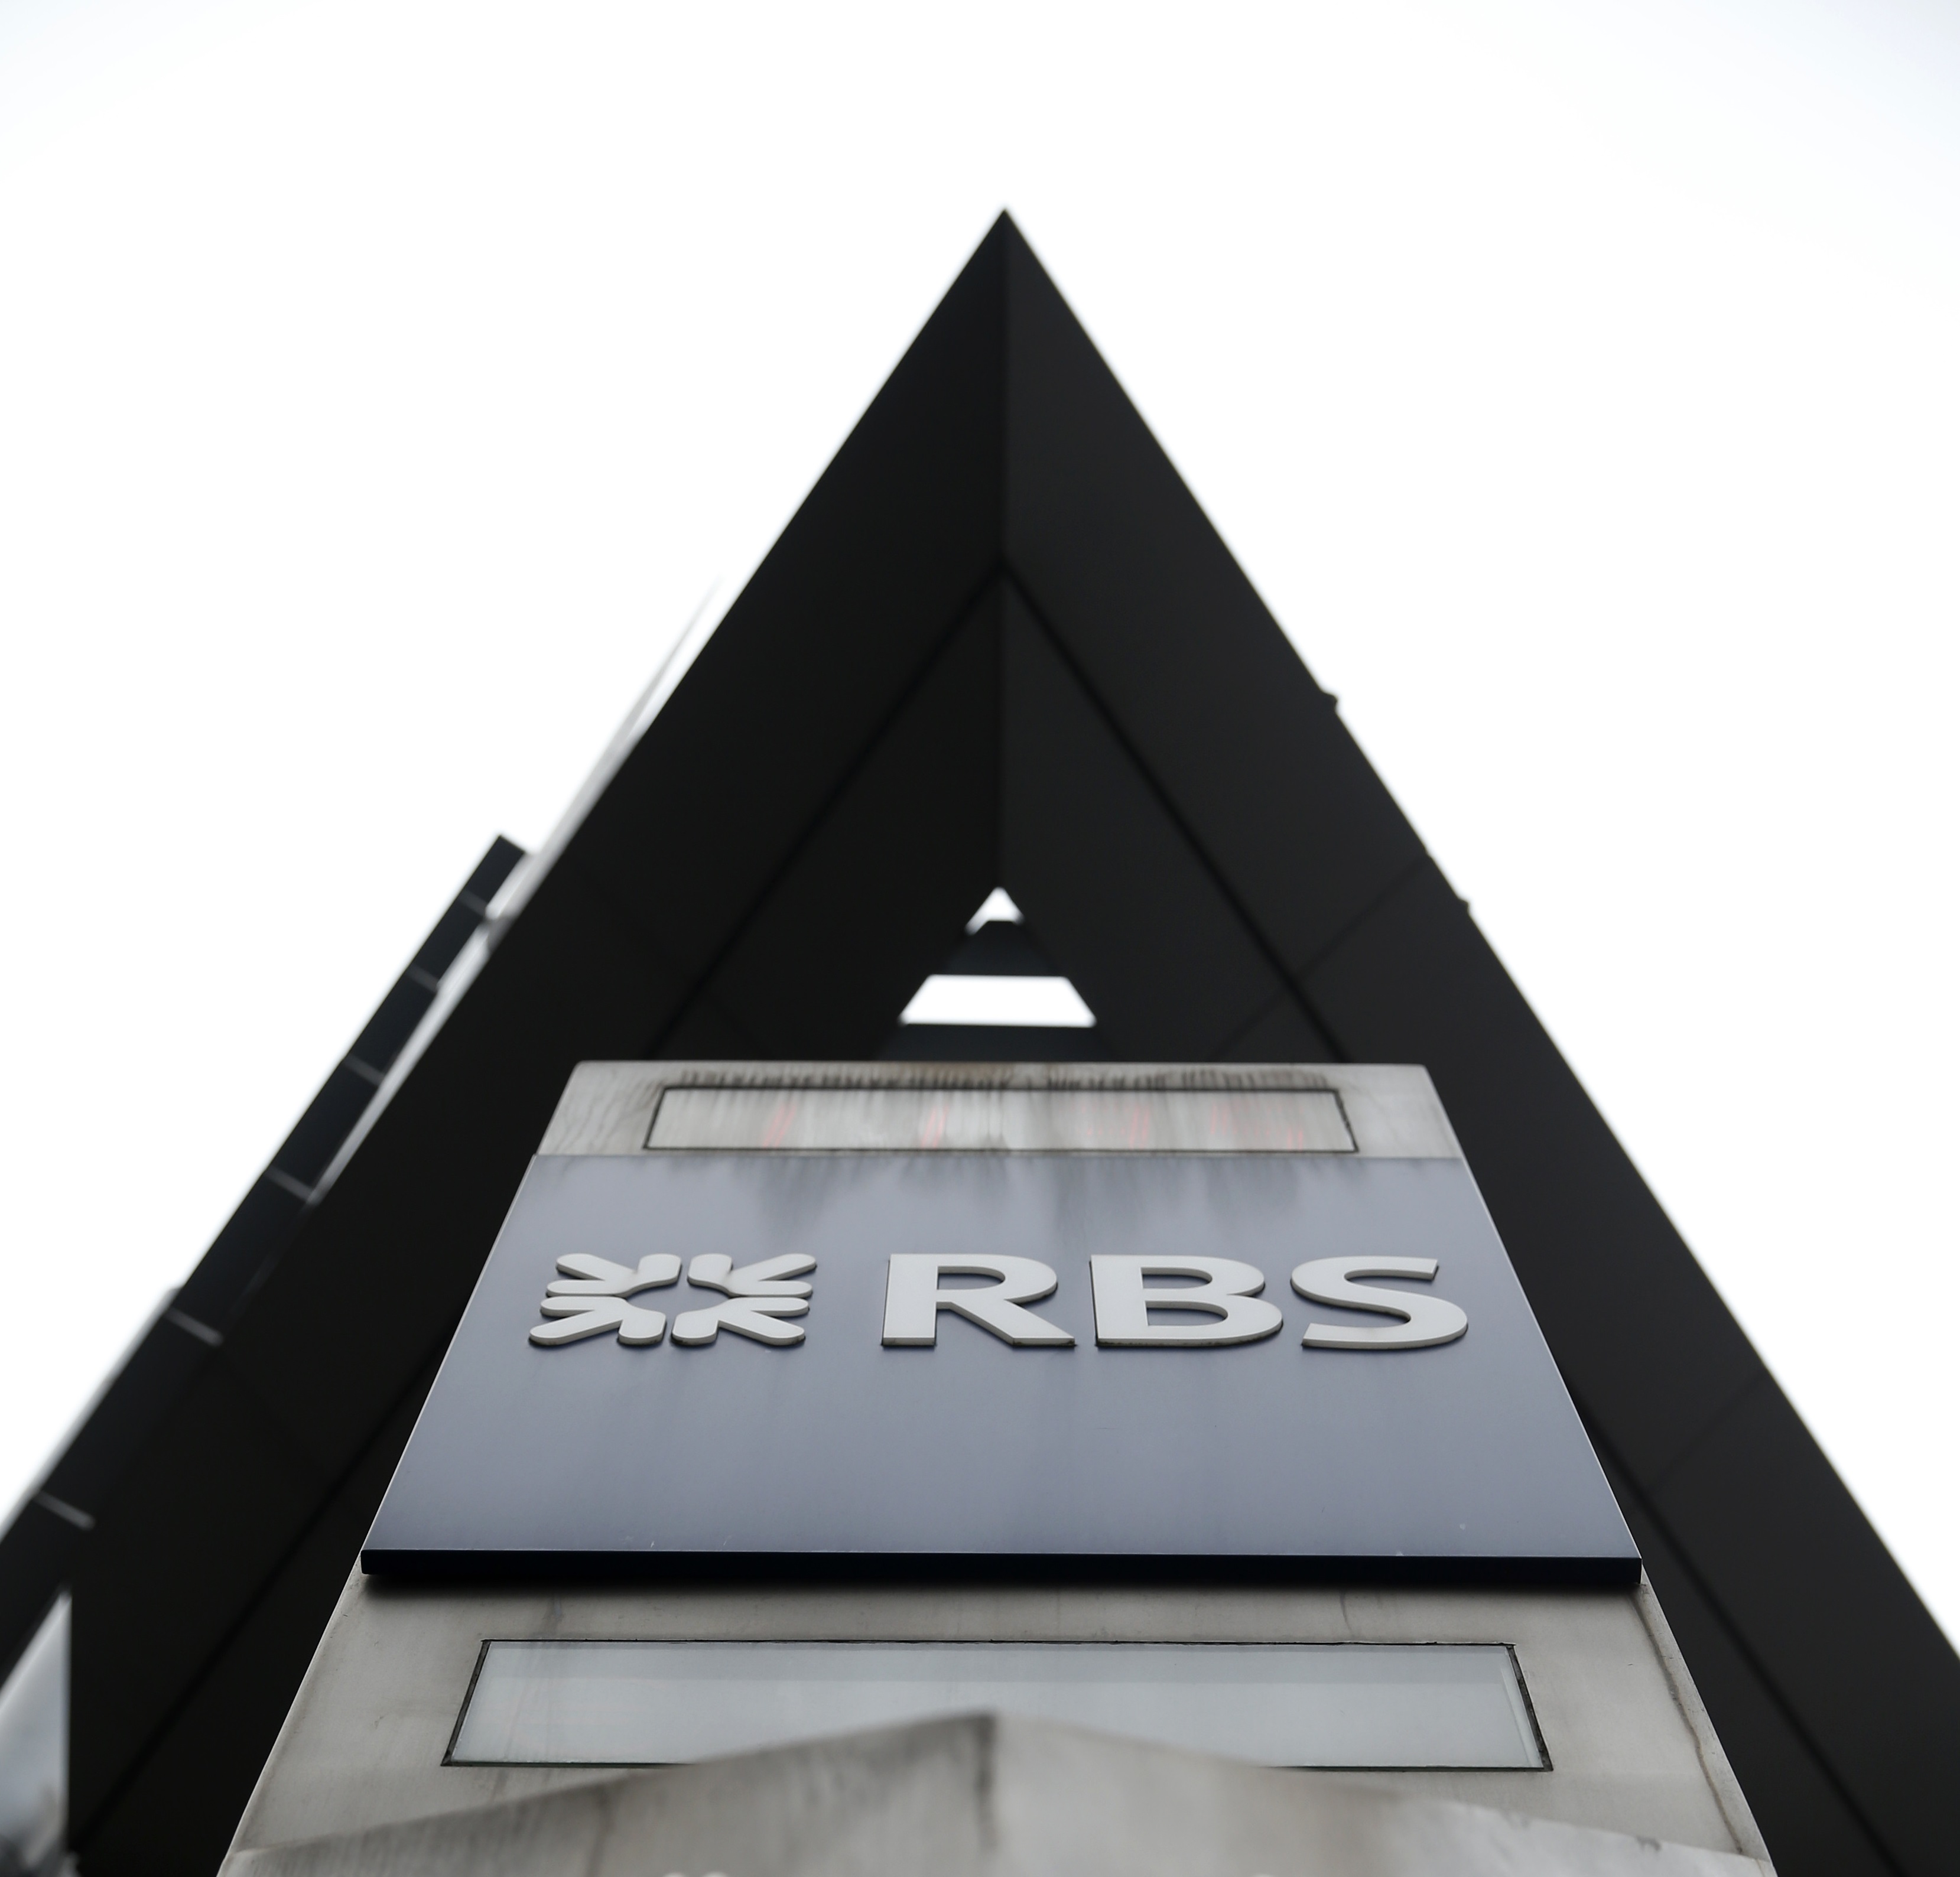 Banco escocés aconsejó mal a empresas con problemas financieros, destaca informe